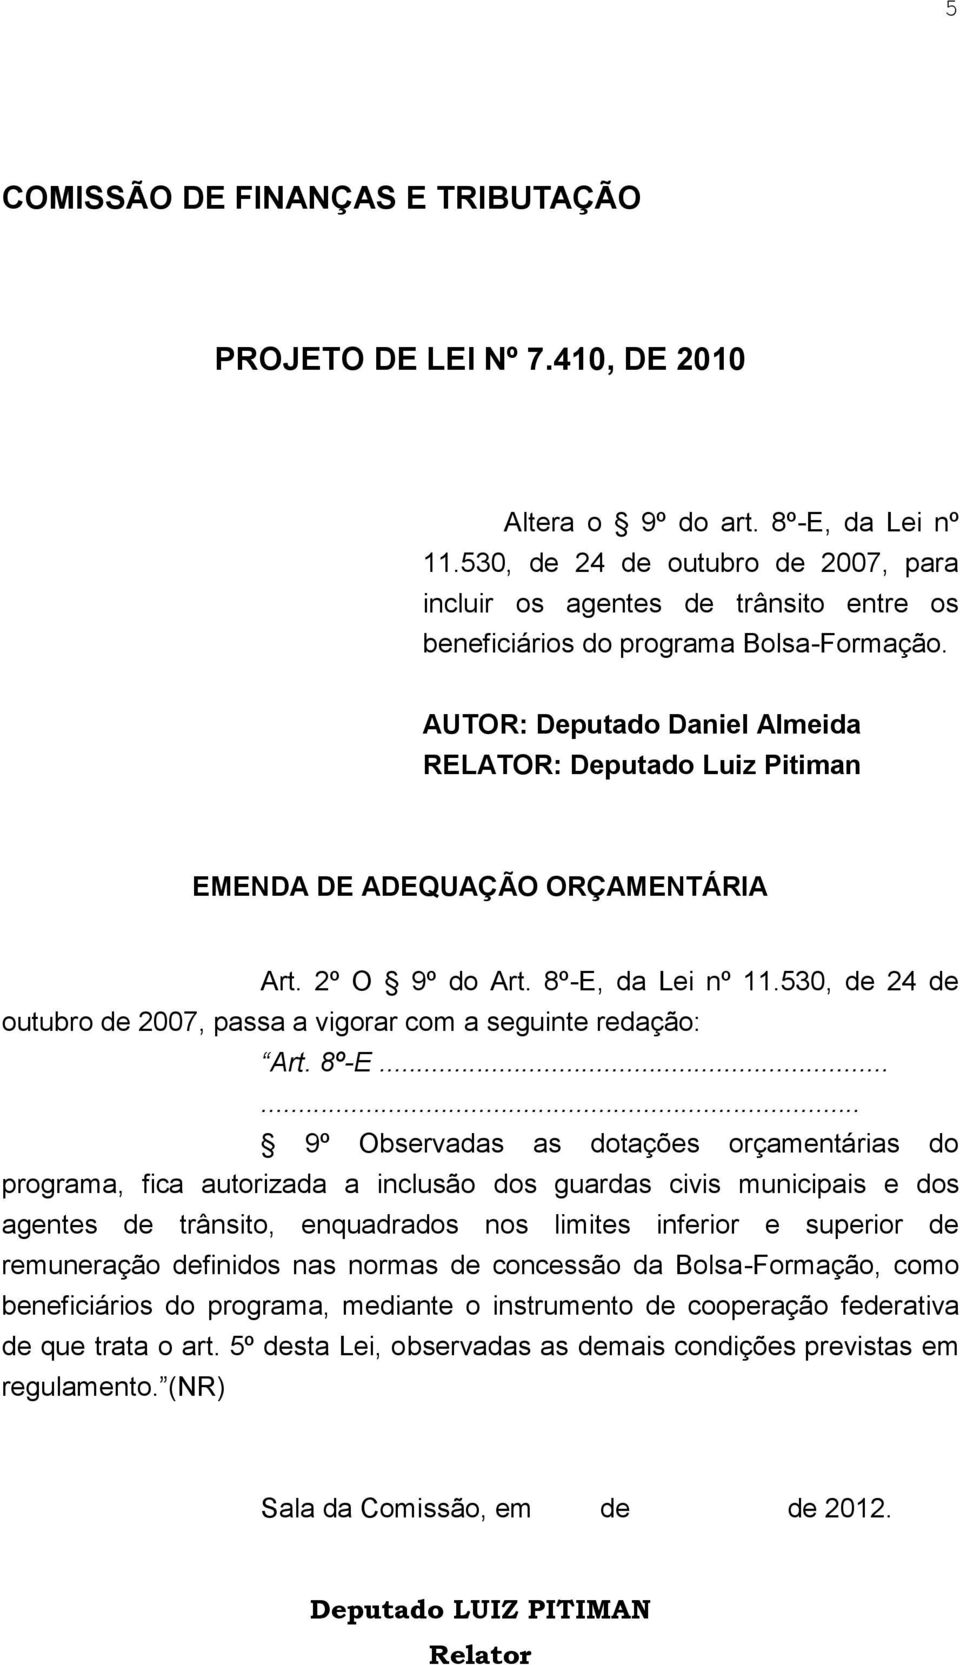 AUTOR: Deputado Daniel Almeida RELATOR: Deputado Luiz Pitiman EMENDA DE ADEQUAÇÃO ORÇAMENTÁRIA Art. 2º O 9º do Art. 8º-E, da Lei nº 11.